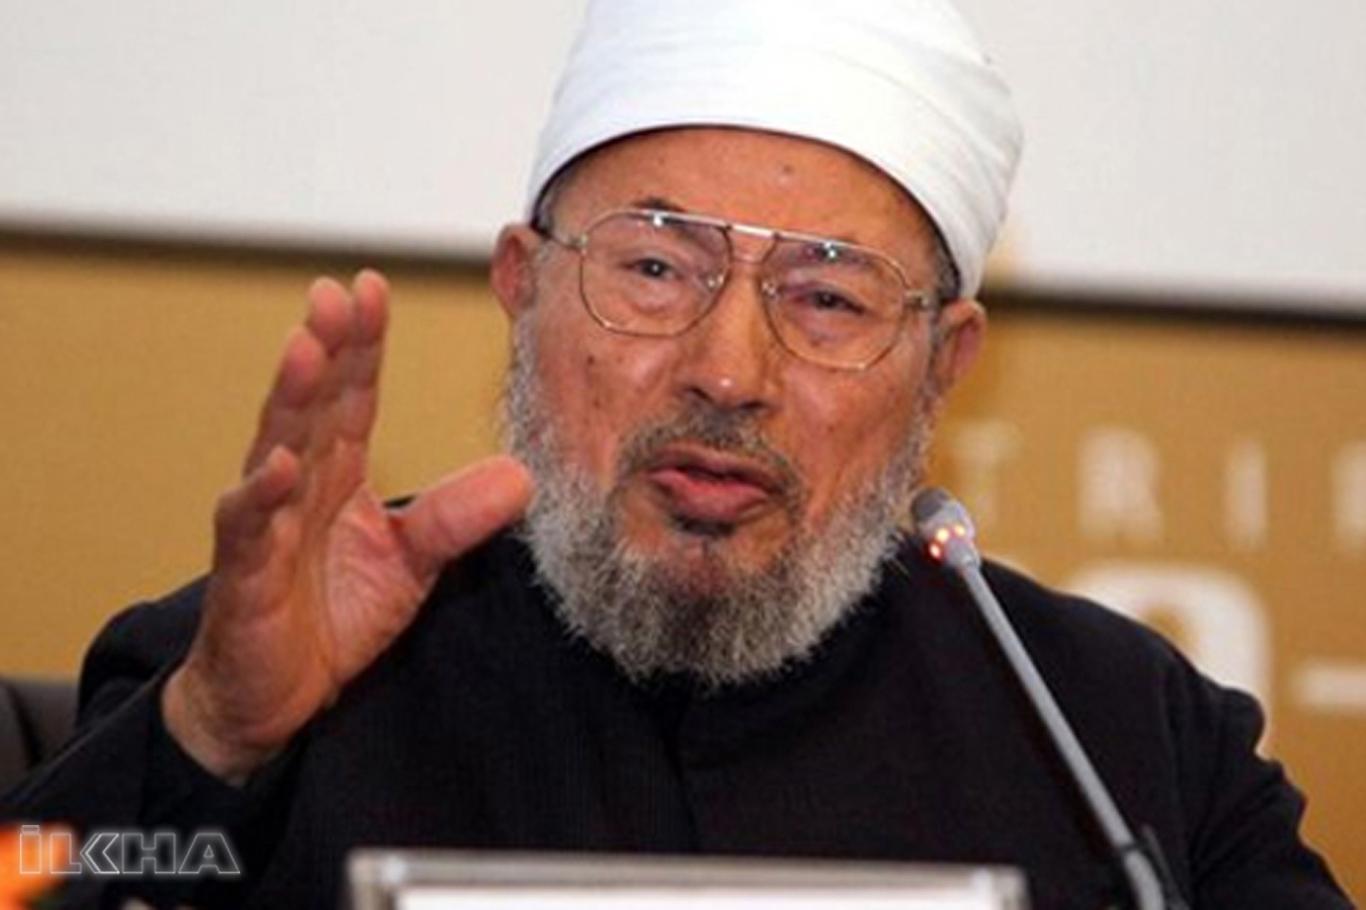 Arakan’s call from Yusuf al-Qaradawi